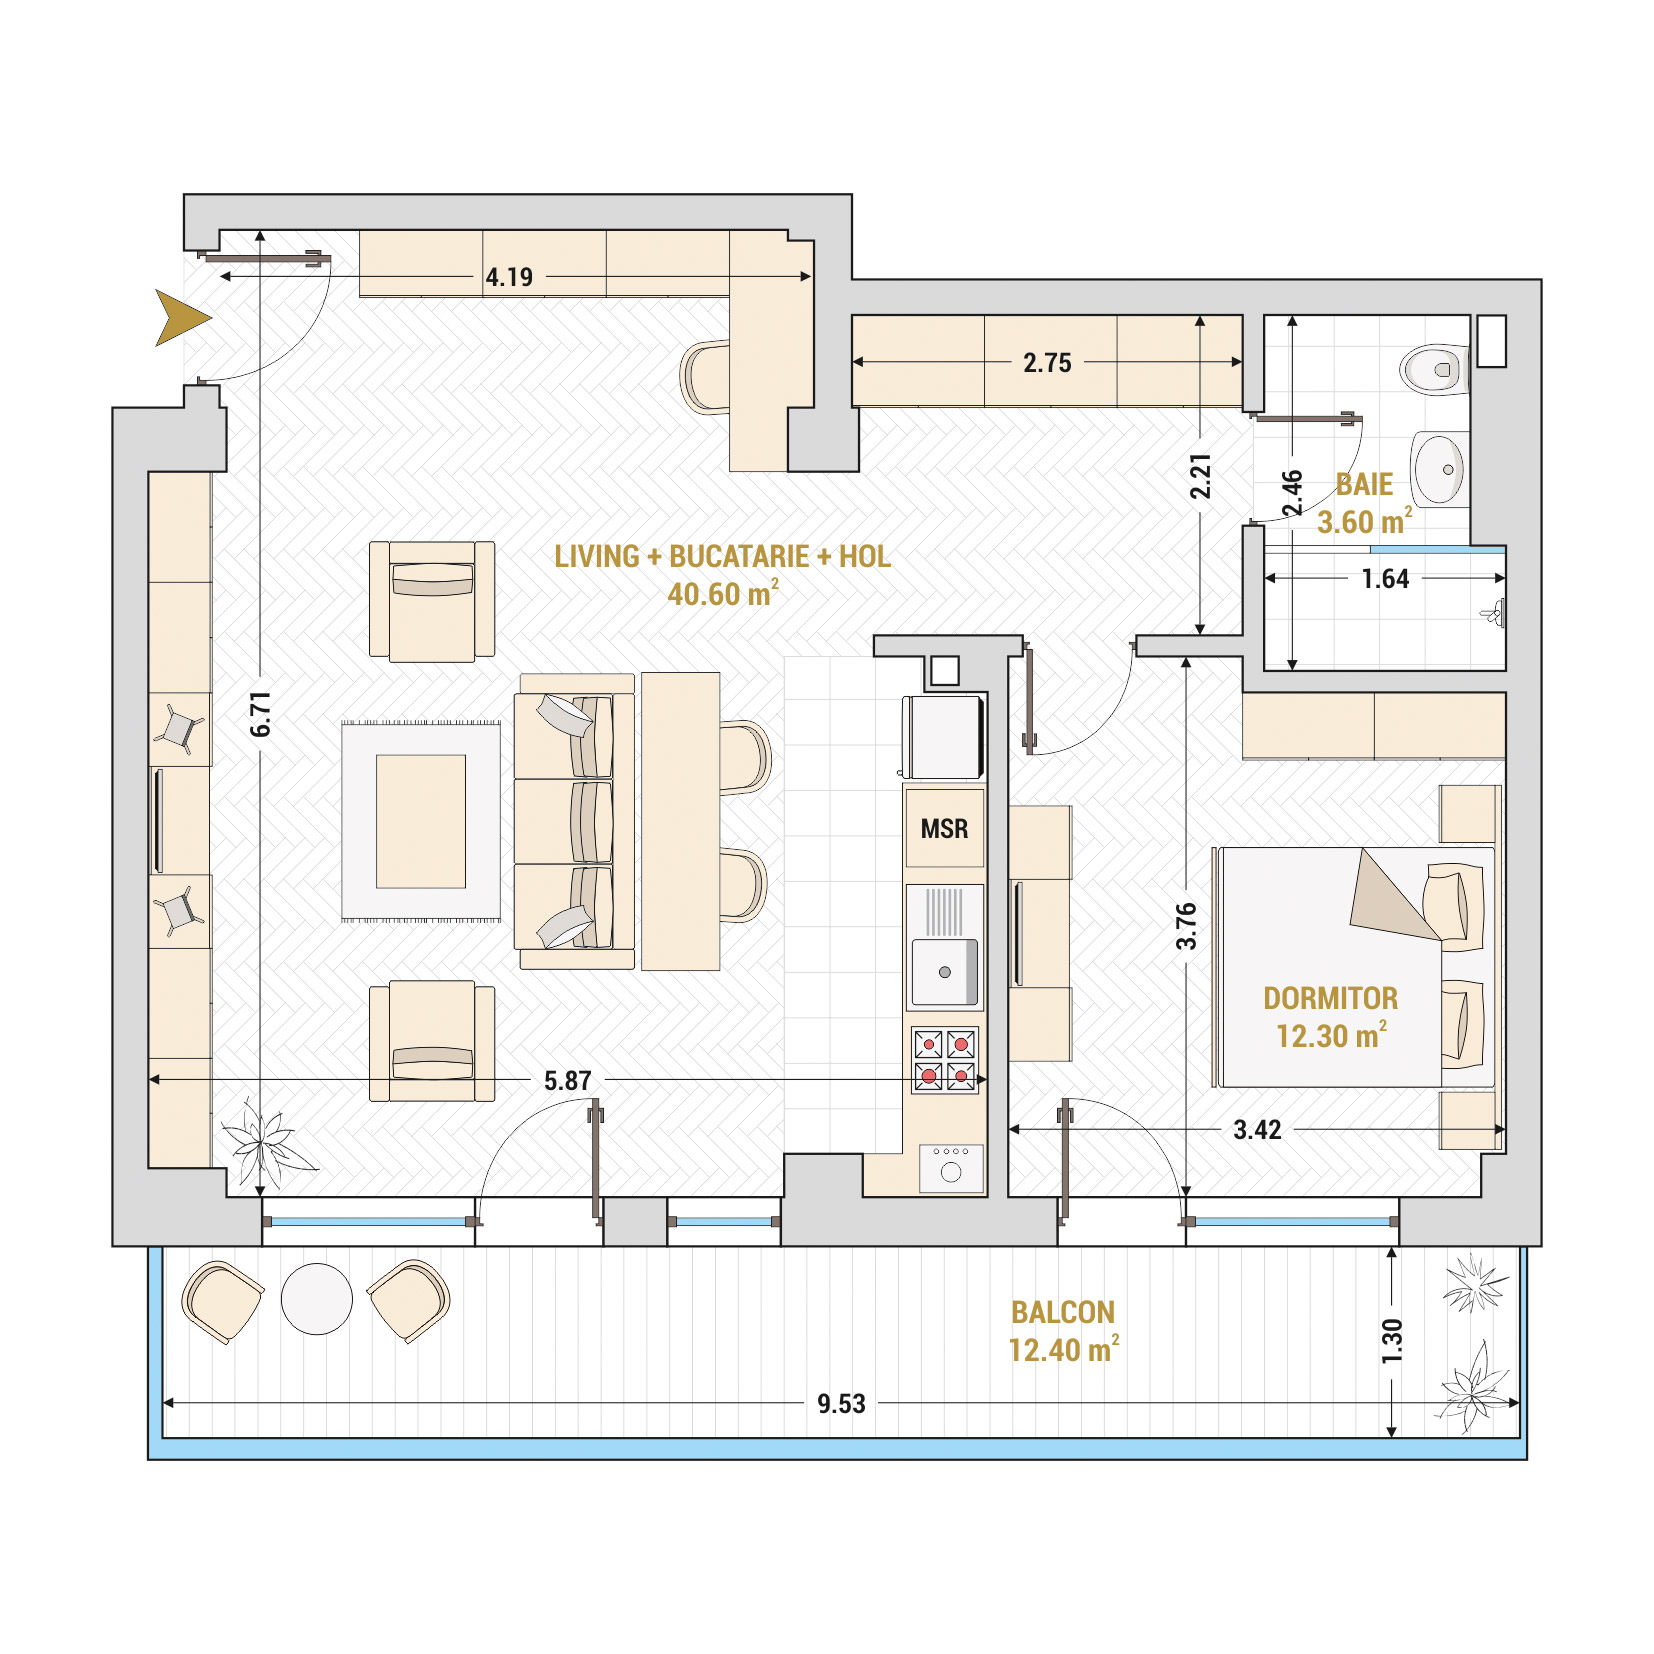 Apartament 2 Camere Nr. 33 - Inchirieri Bucuresti - Marriott, Piata Unirii, 13 Septembrie, Izvor - Suprafata utila totala - 72.10 mp.